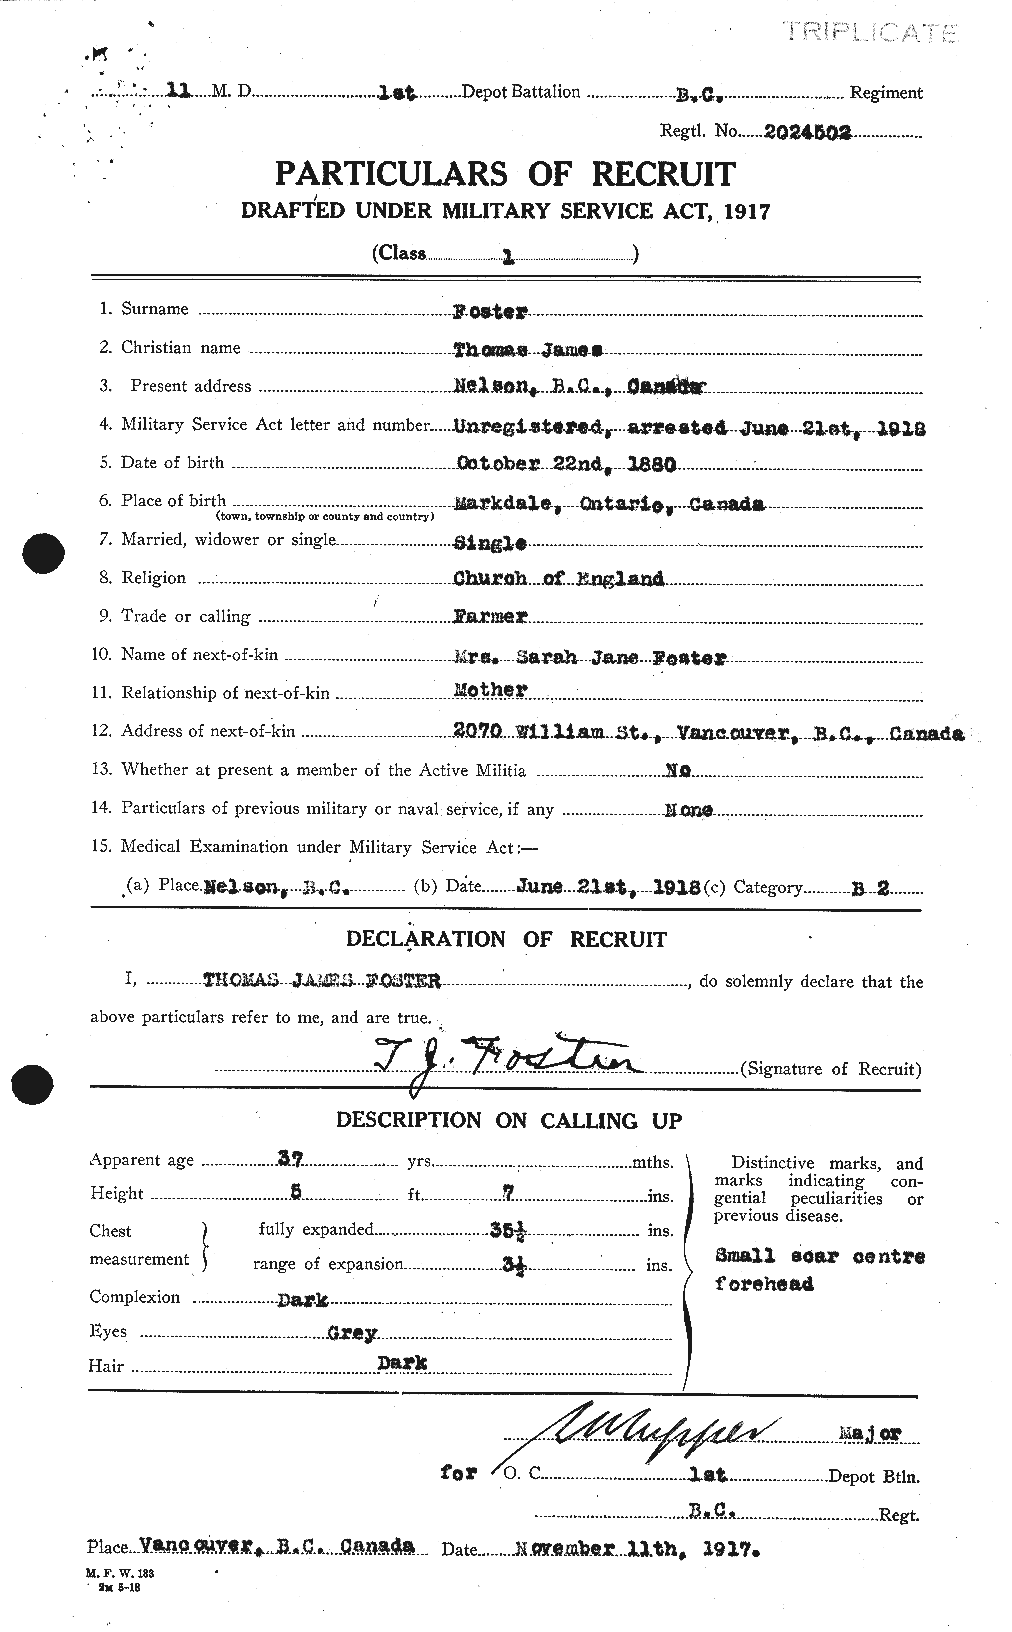 Dossiers du Personnel de la Première Guerre mondiale - CEC 335239a